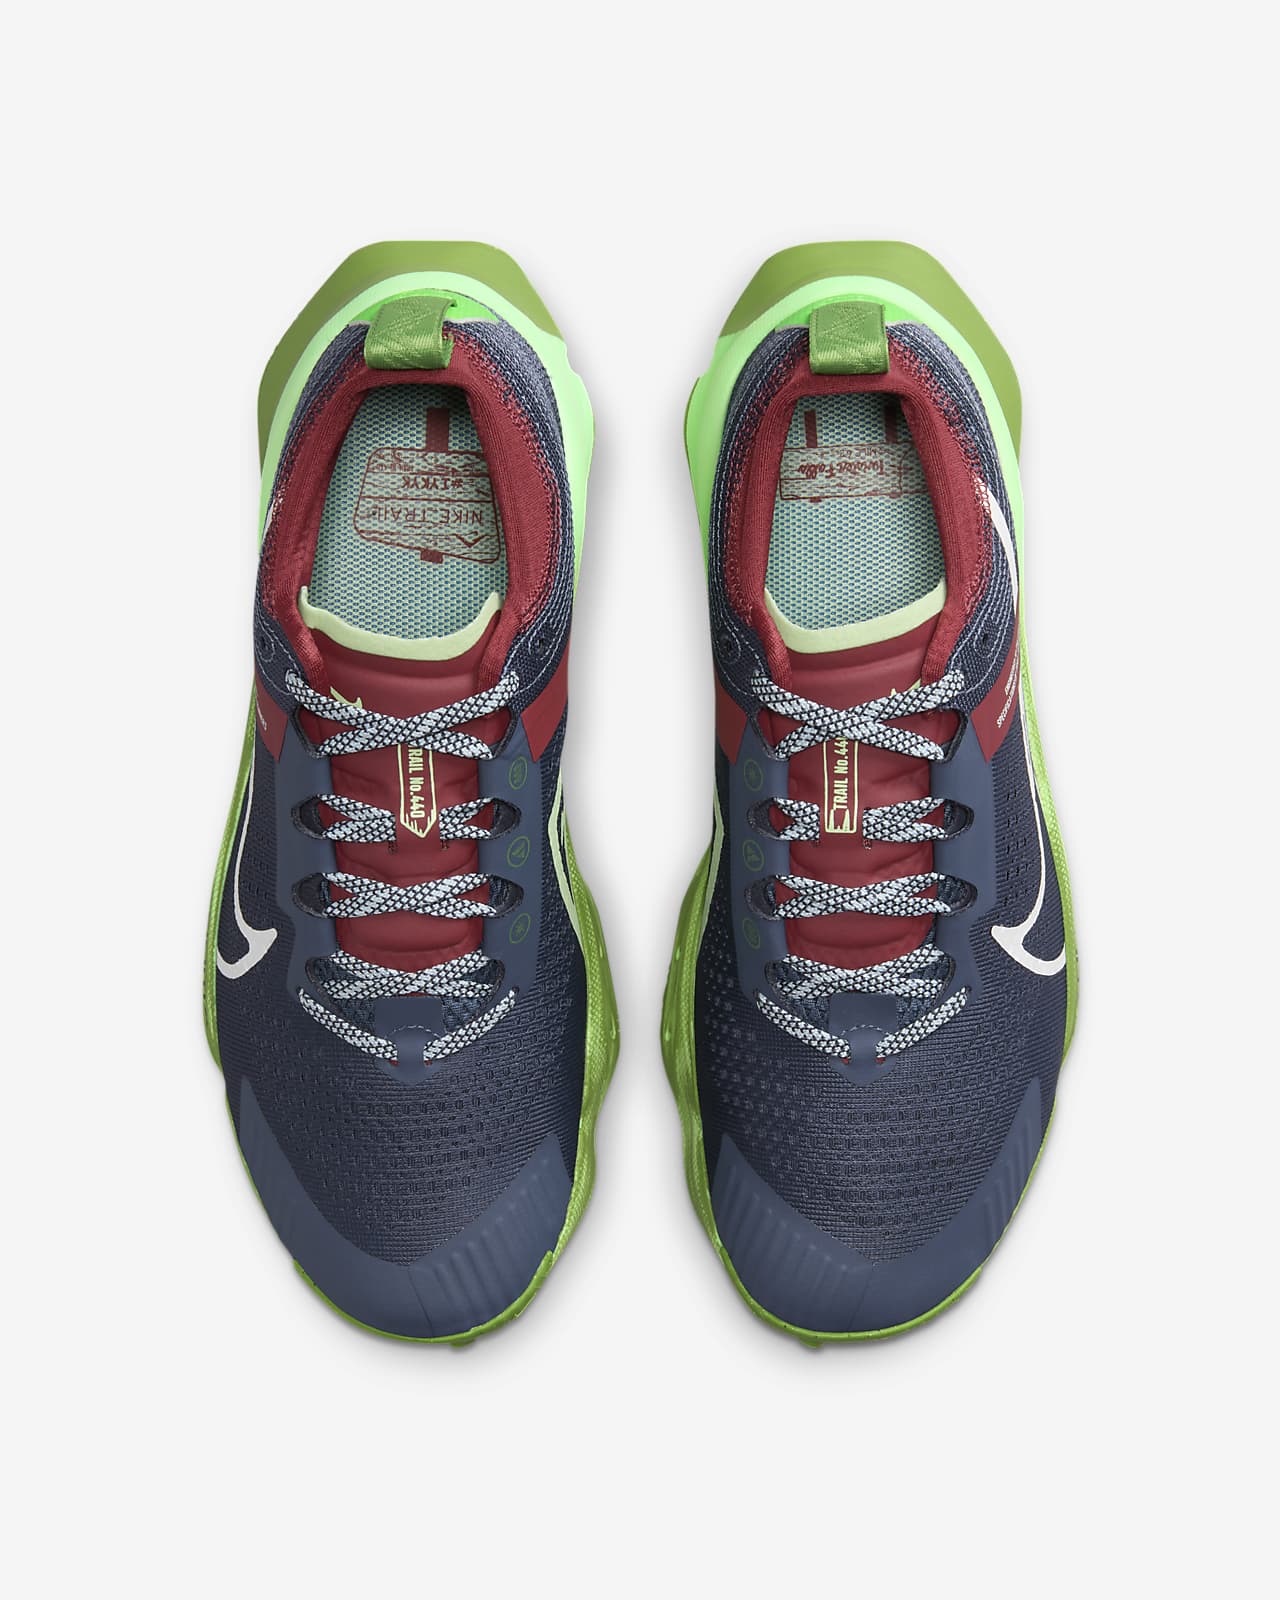 Nike Zegama Women's Trail-Running Shoes